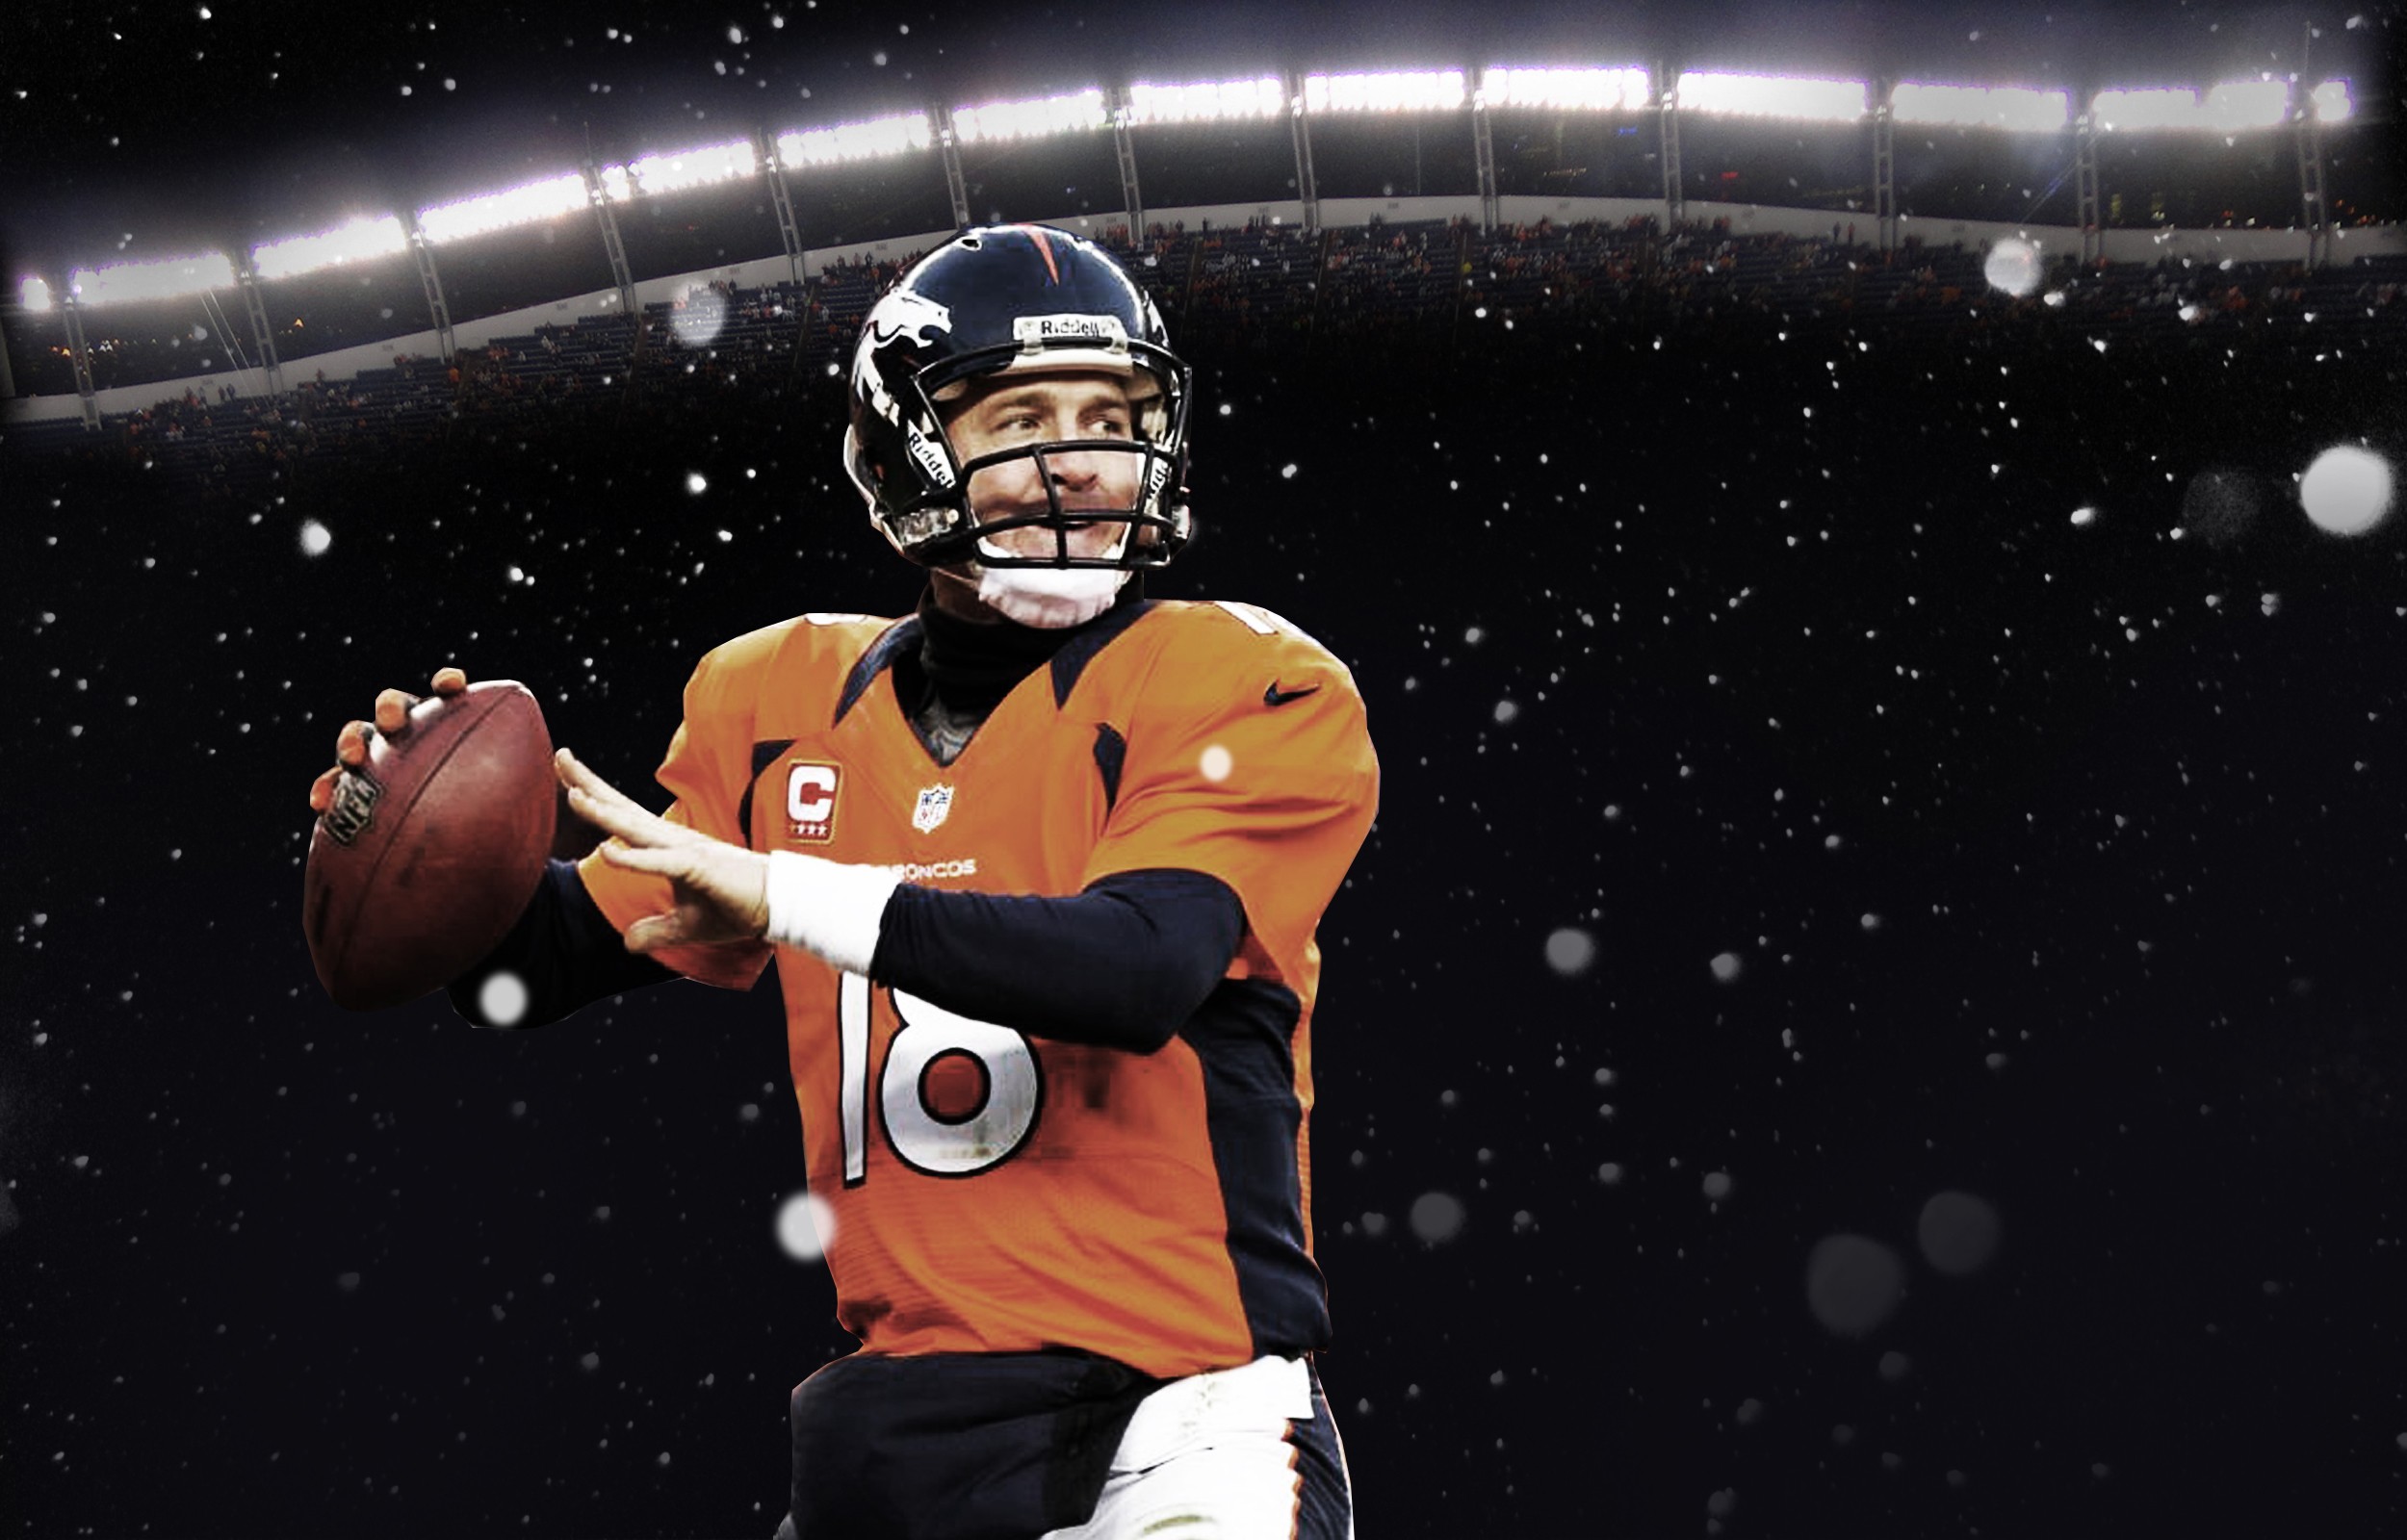 Peyton Manning 2015 Desktop Wallpapers